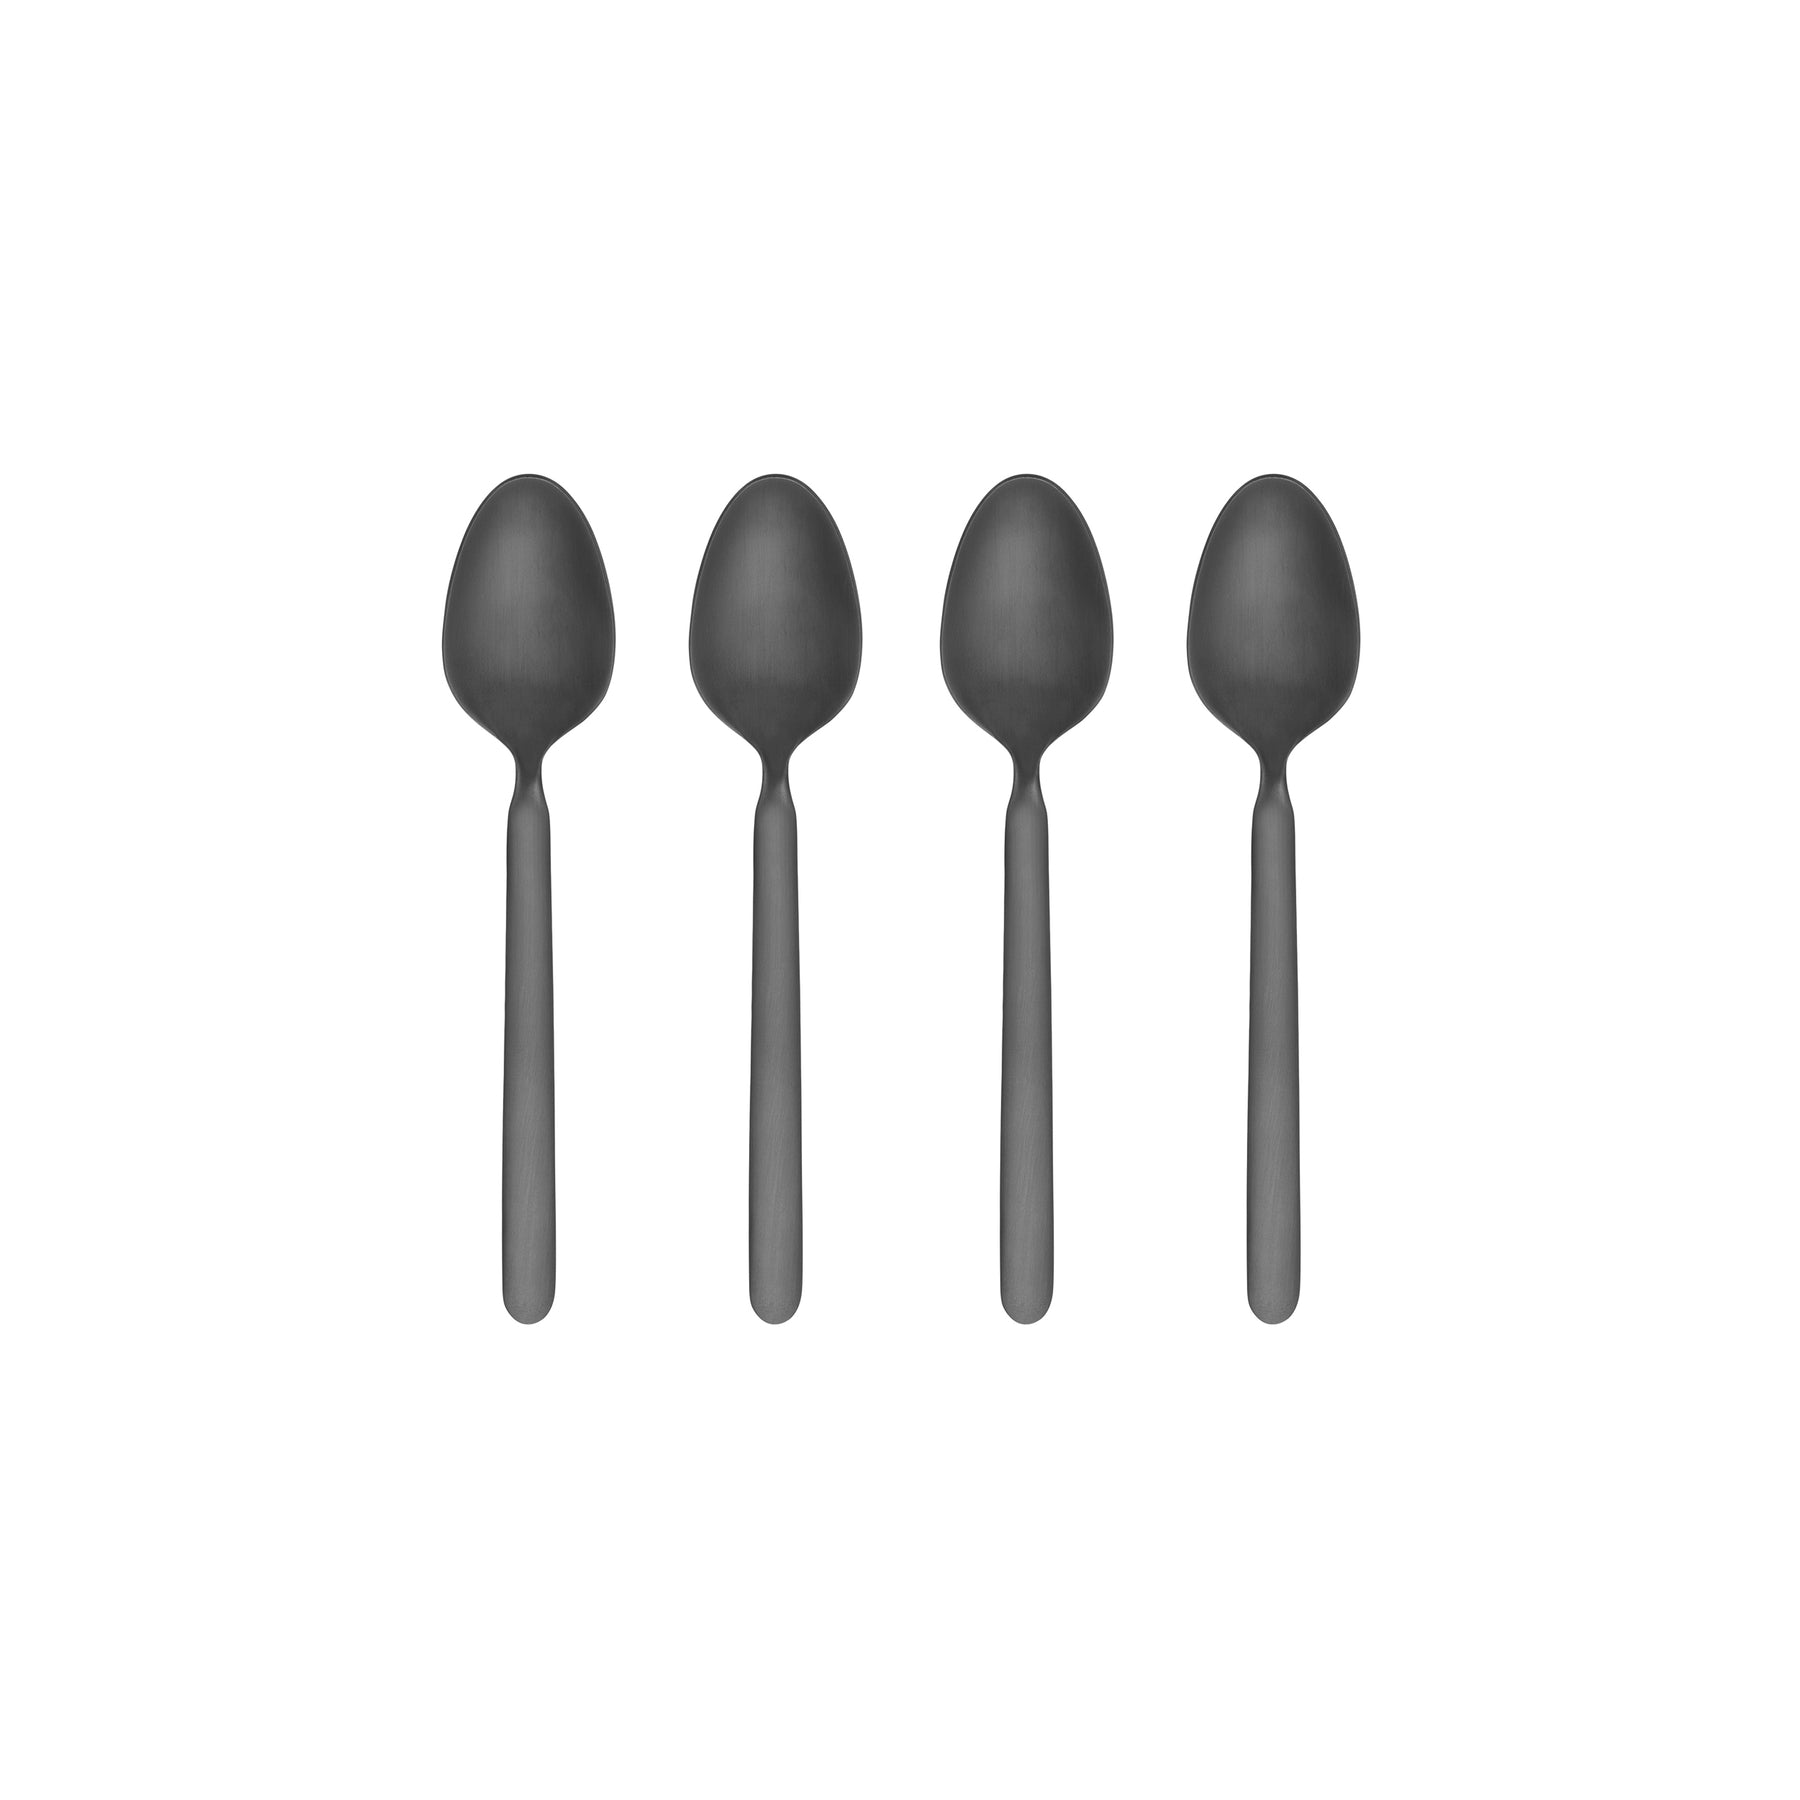 Stella Espresso Spoons (4pc) - Black